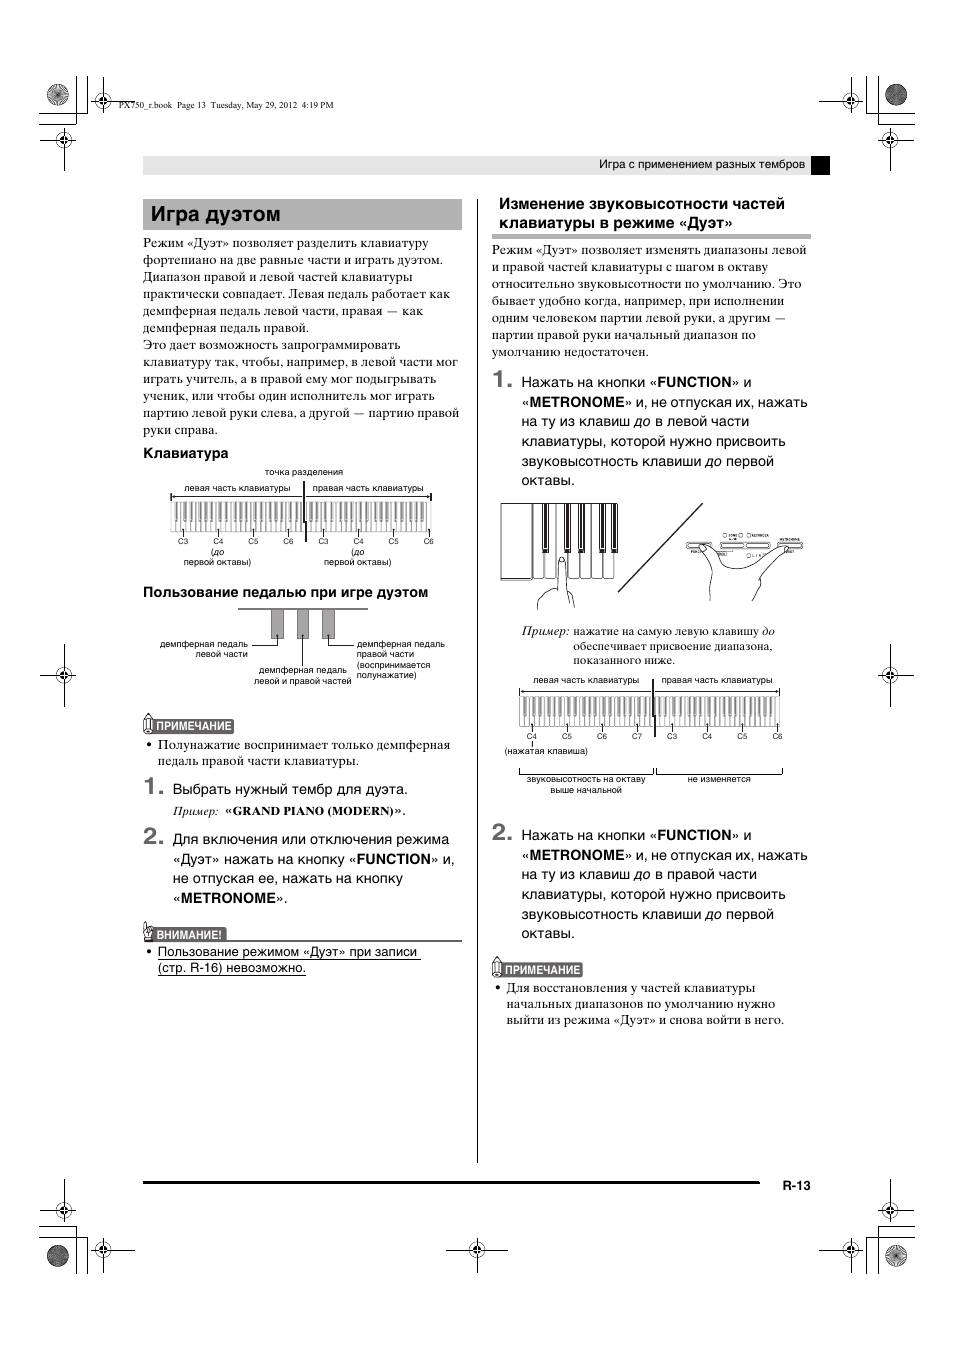 Игра дуэтом | Инструкция по эксплуатации Casio PX-750 | Страница 15 / 42